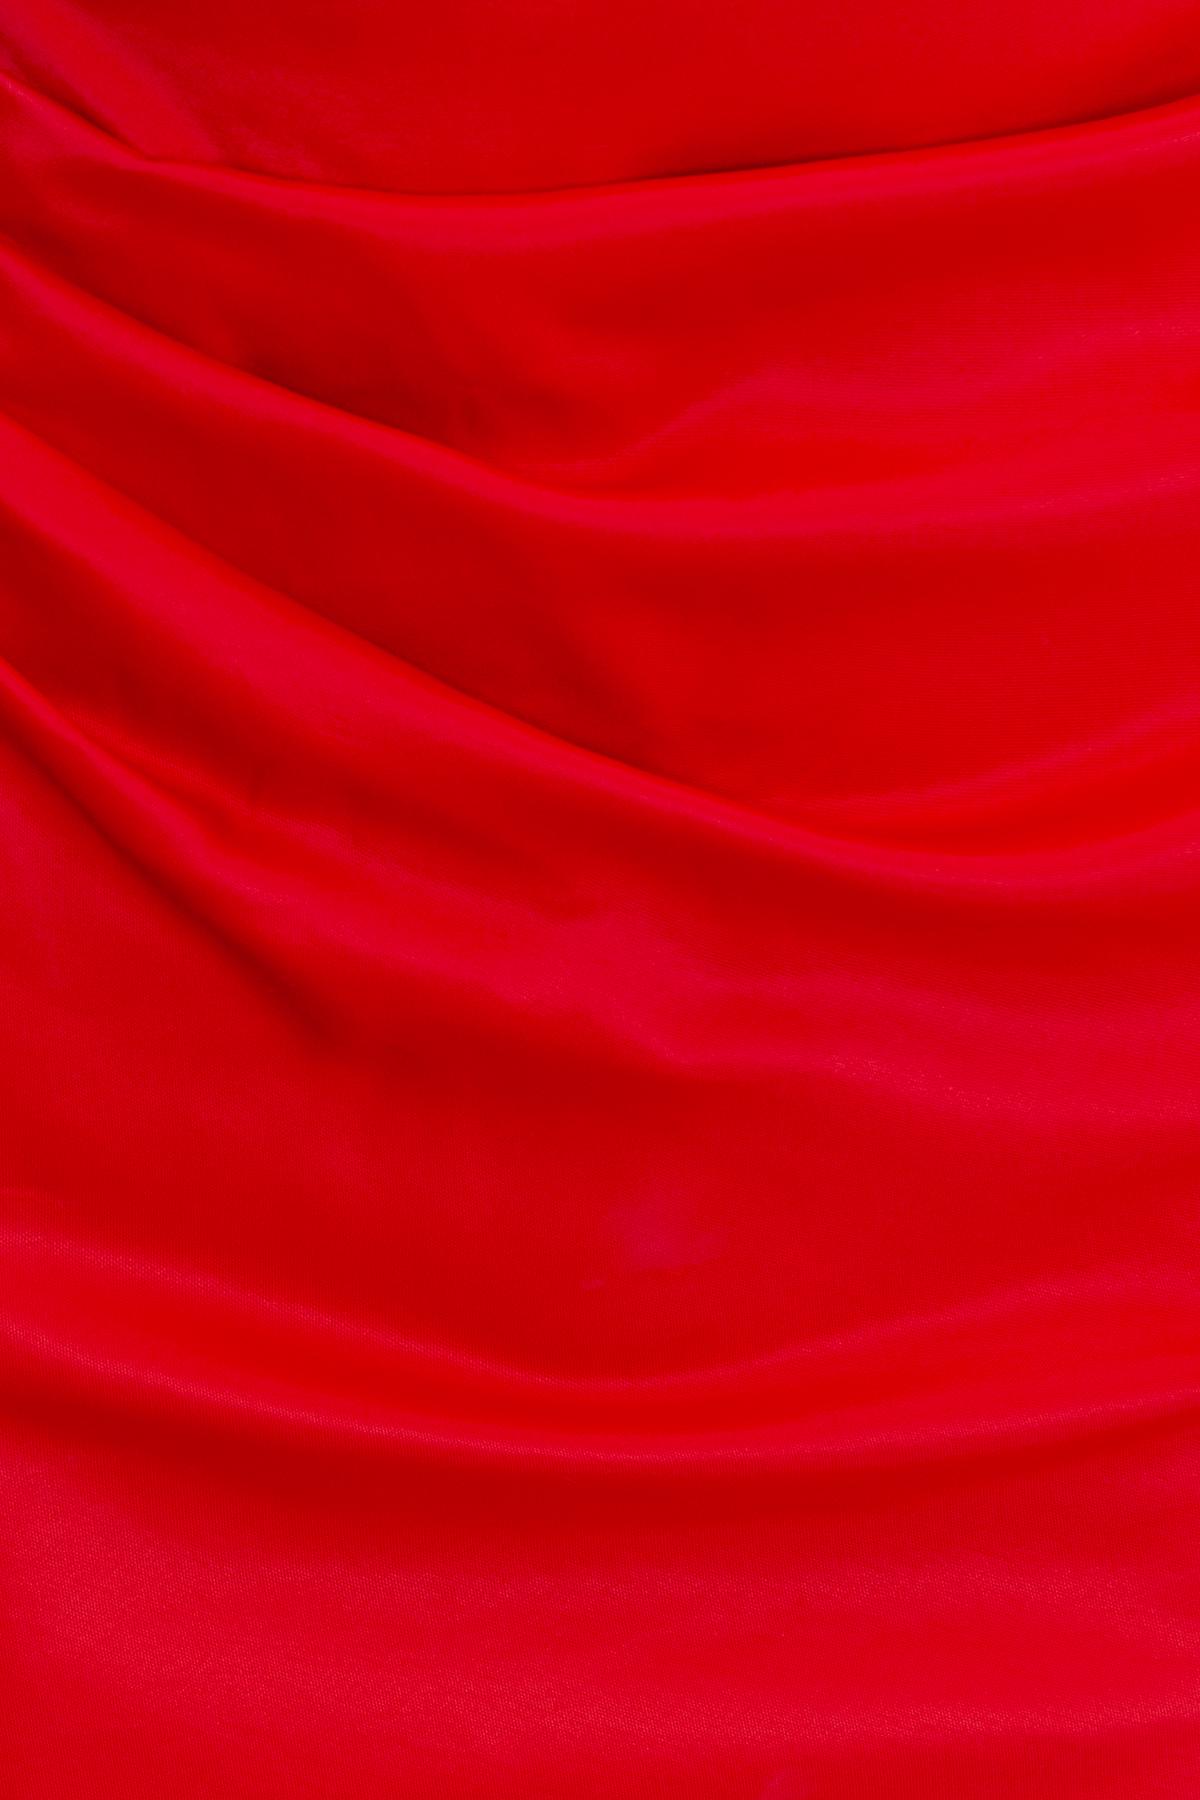 Bayan Kırmızı Drapeli Asimetrik Yaka Mini Elbise